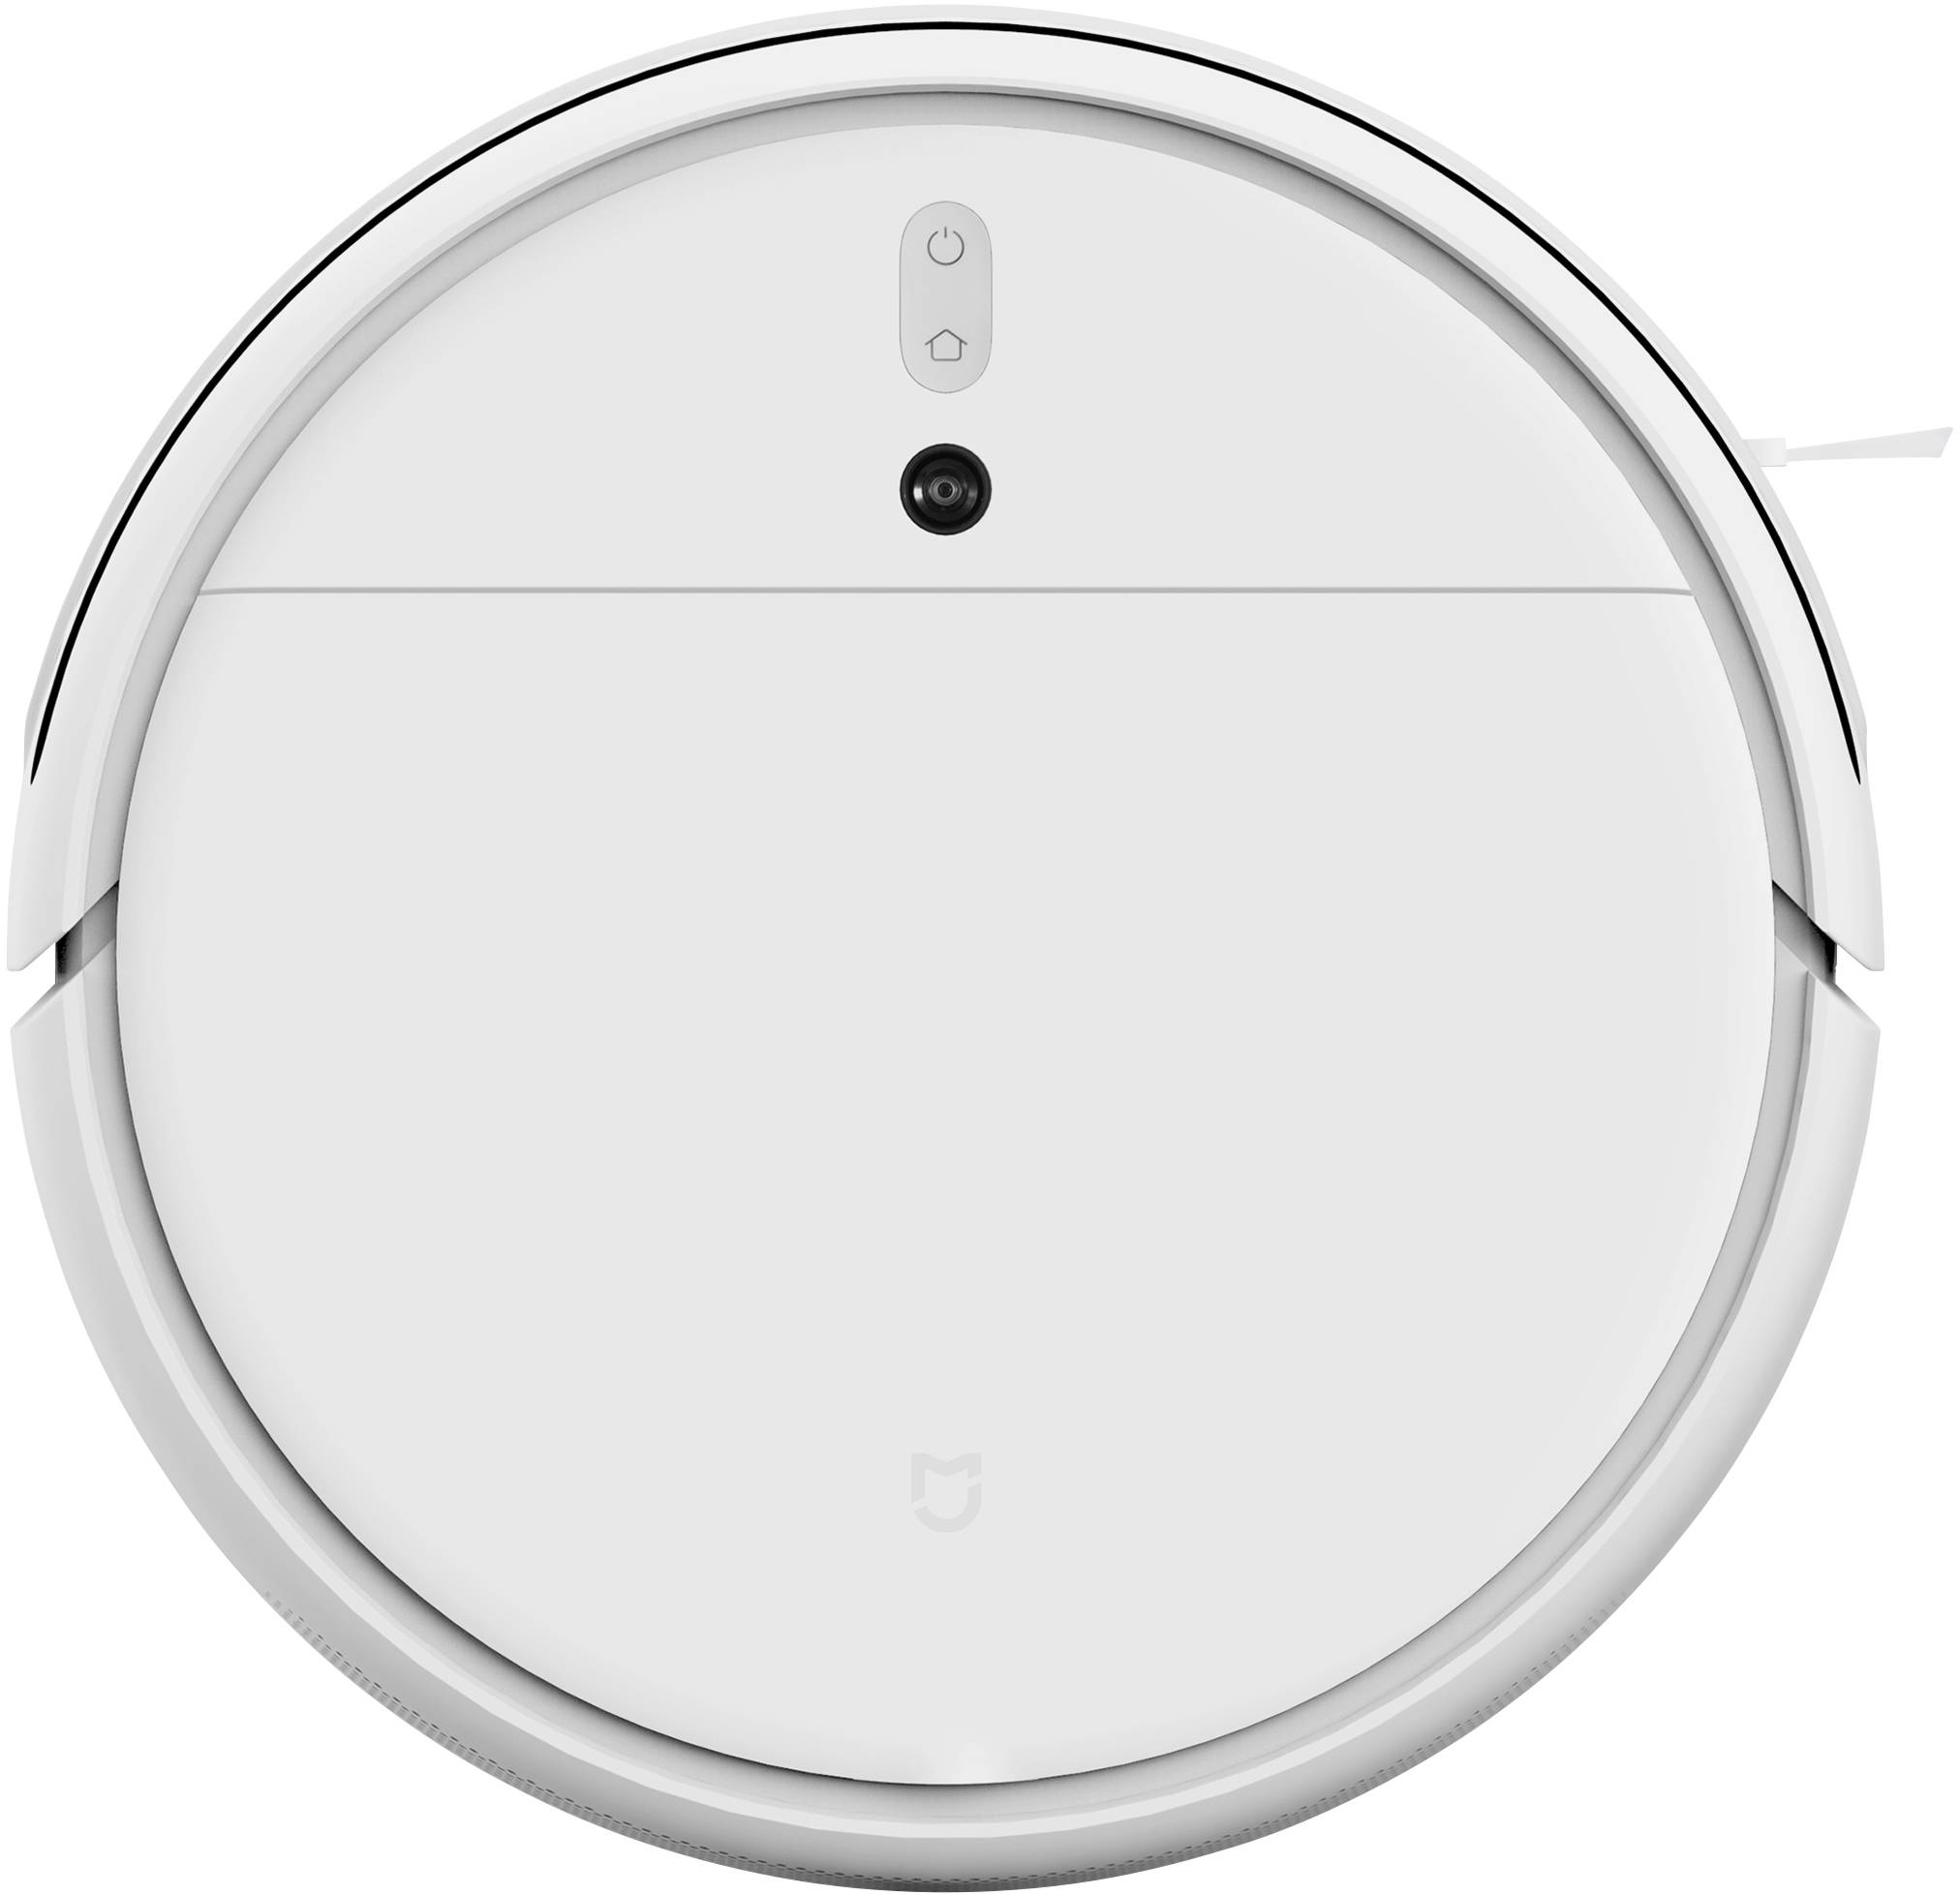 Xiaomi Robot White